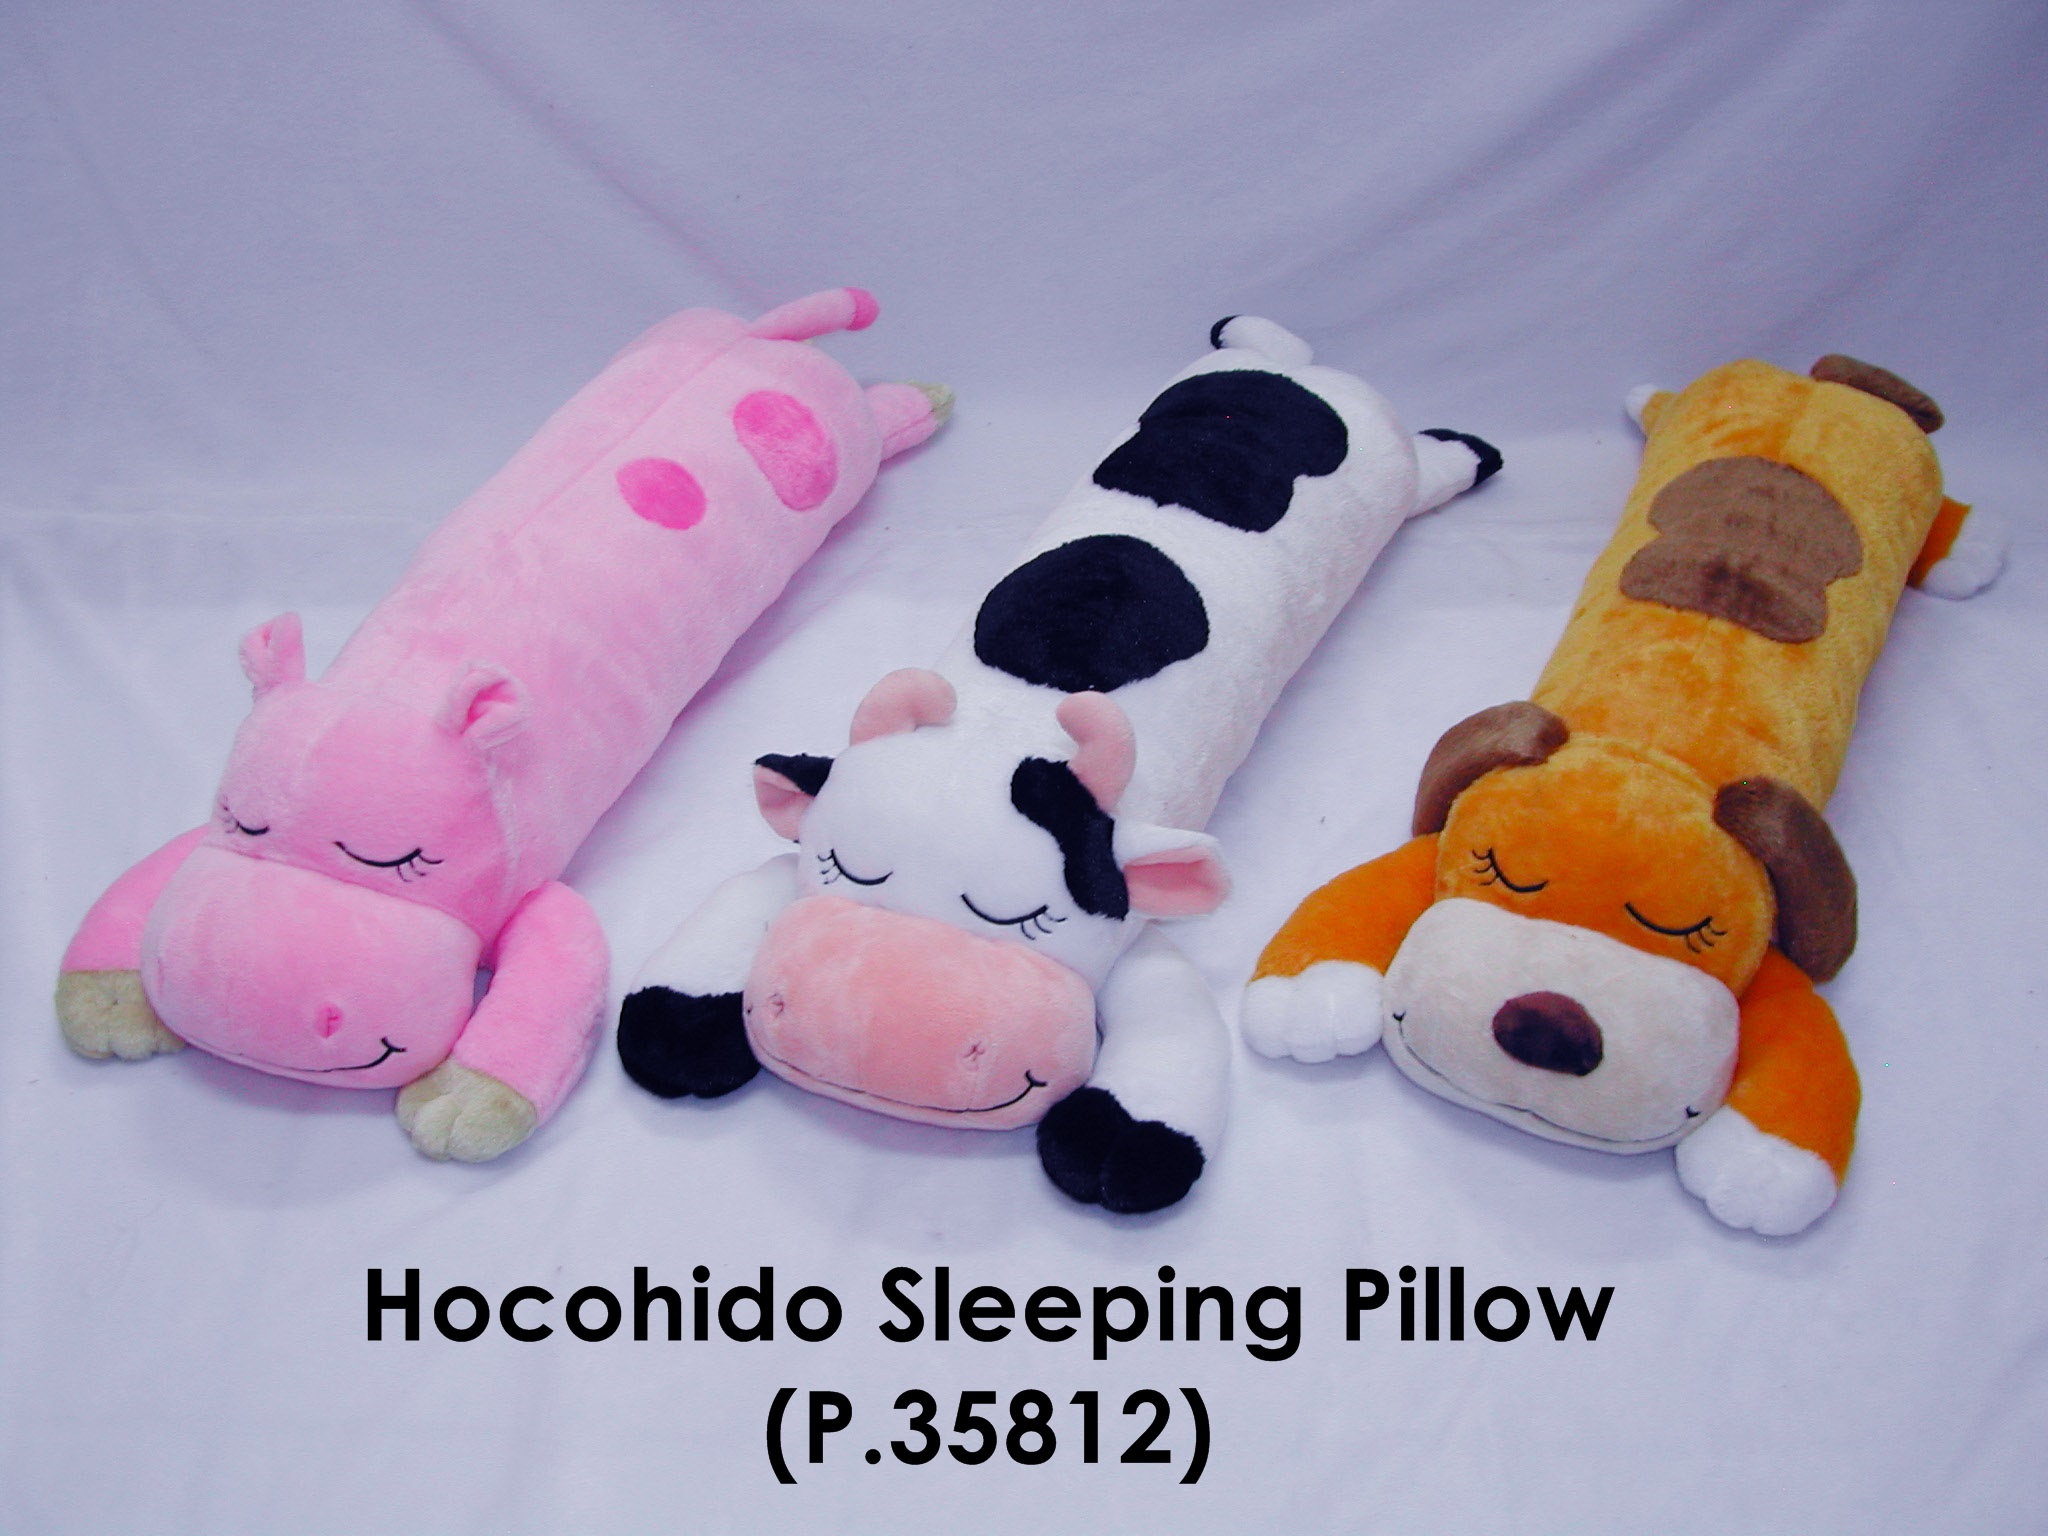 Hocohido Sleeping pillow P.35812.JPG